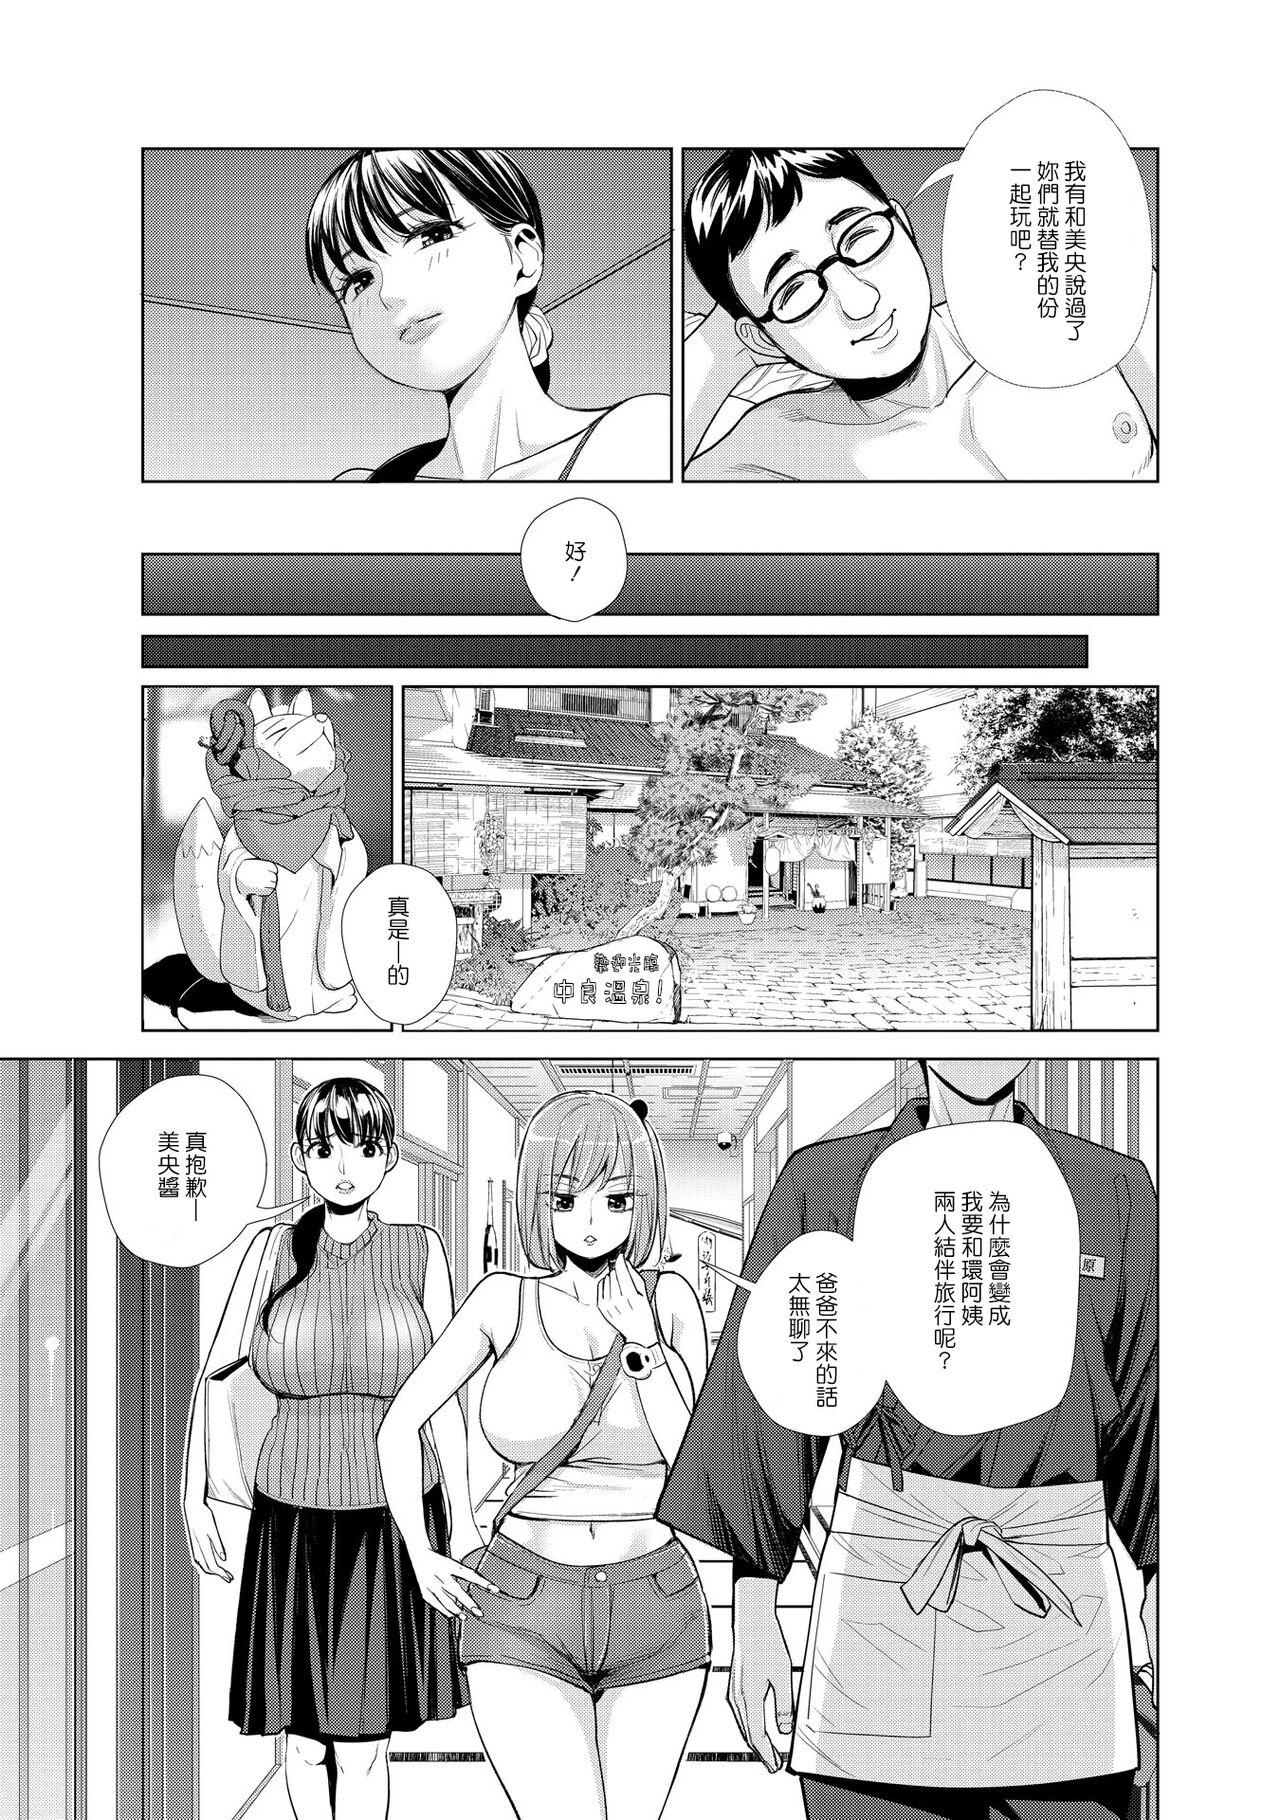 Face Nakayoku no yu e youkoso Gay Broken - Page 5